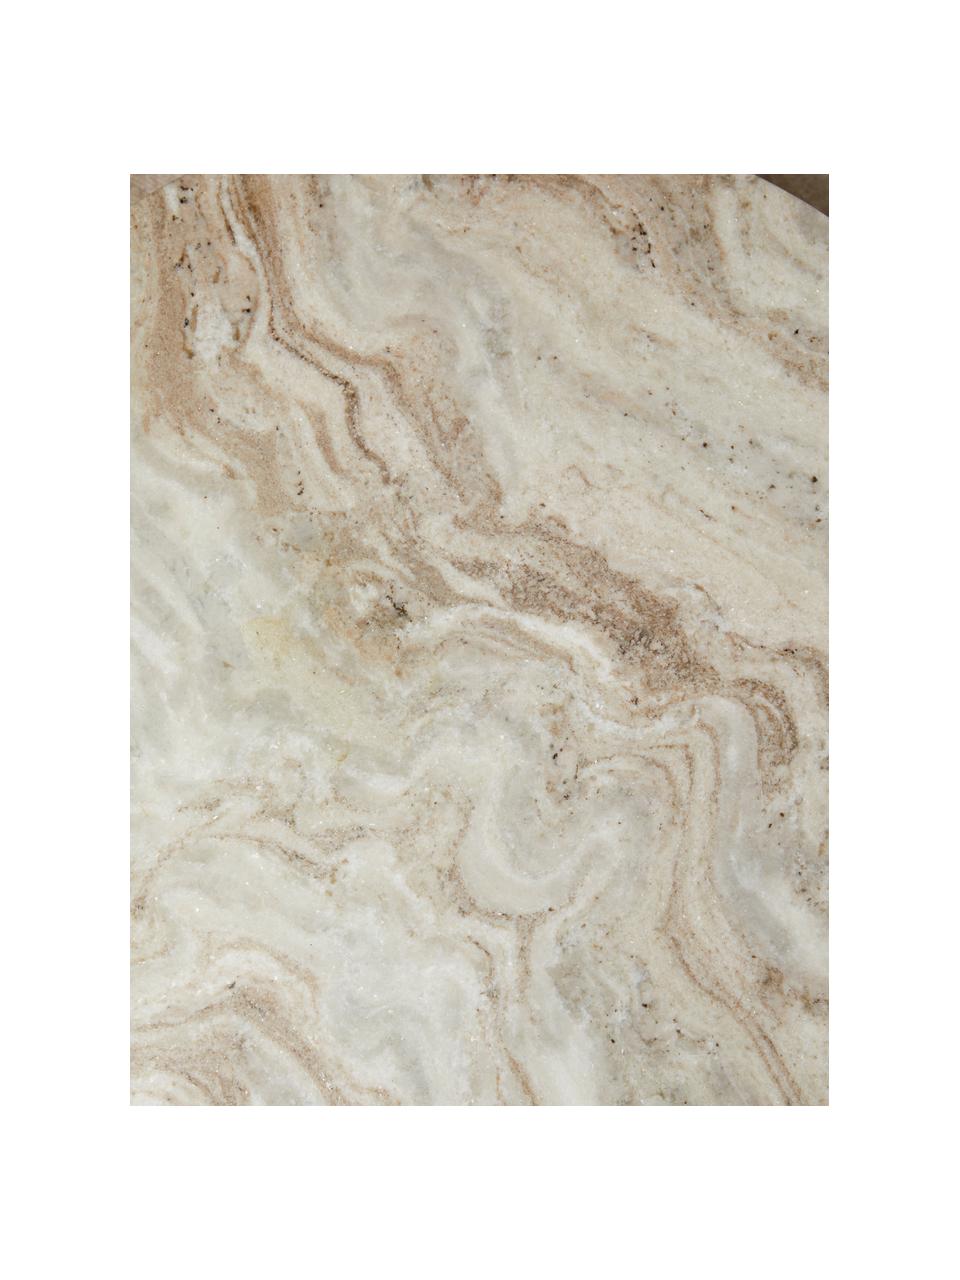 Runder Couchtisch Erie mit Marmor-Tischplatte, Tischplatte: Marmor, Beige Marmor, Mangoholz, lackiert, Ø 75 x H 41 cm